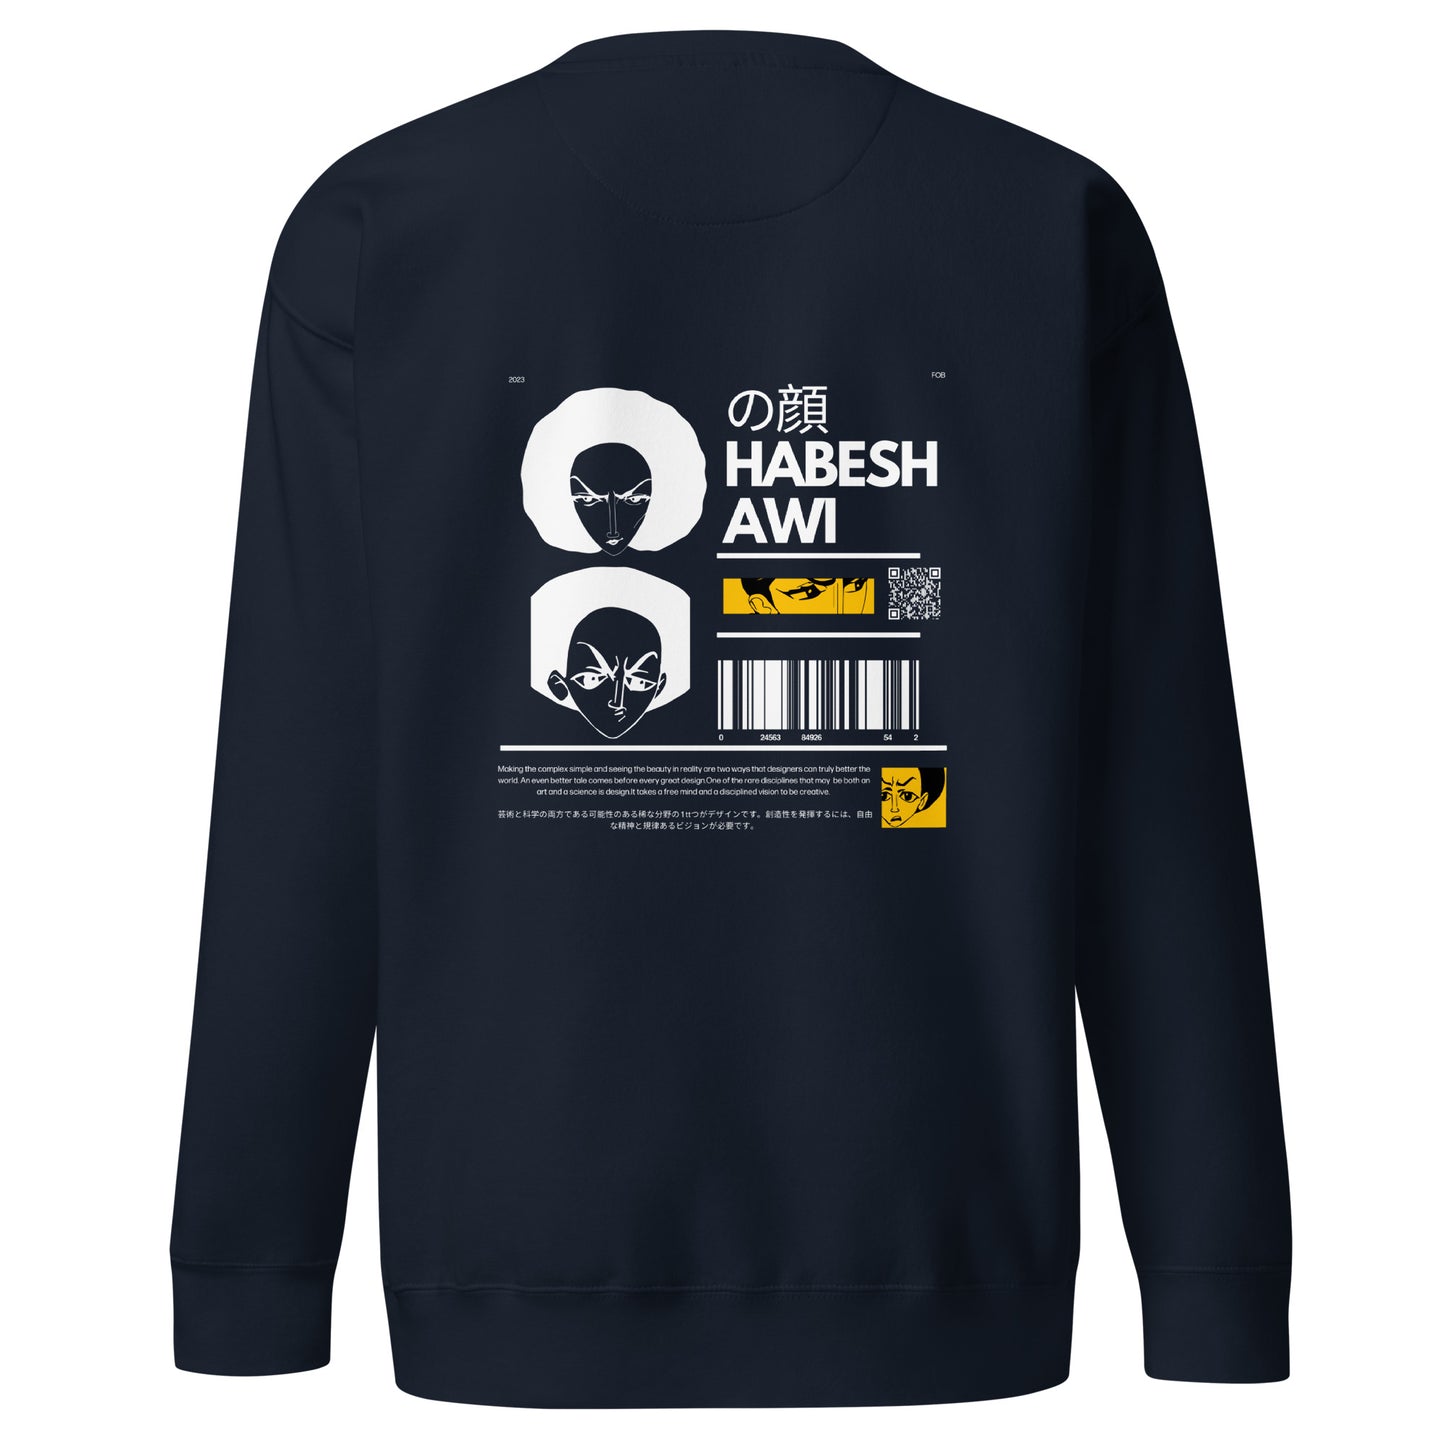 Face Of Habeshawwi Unisex Dark Color Sweatshirt